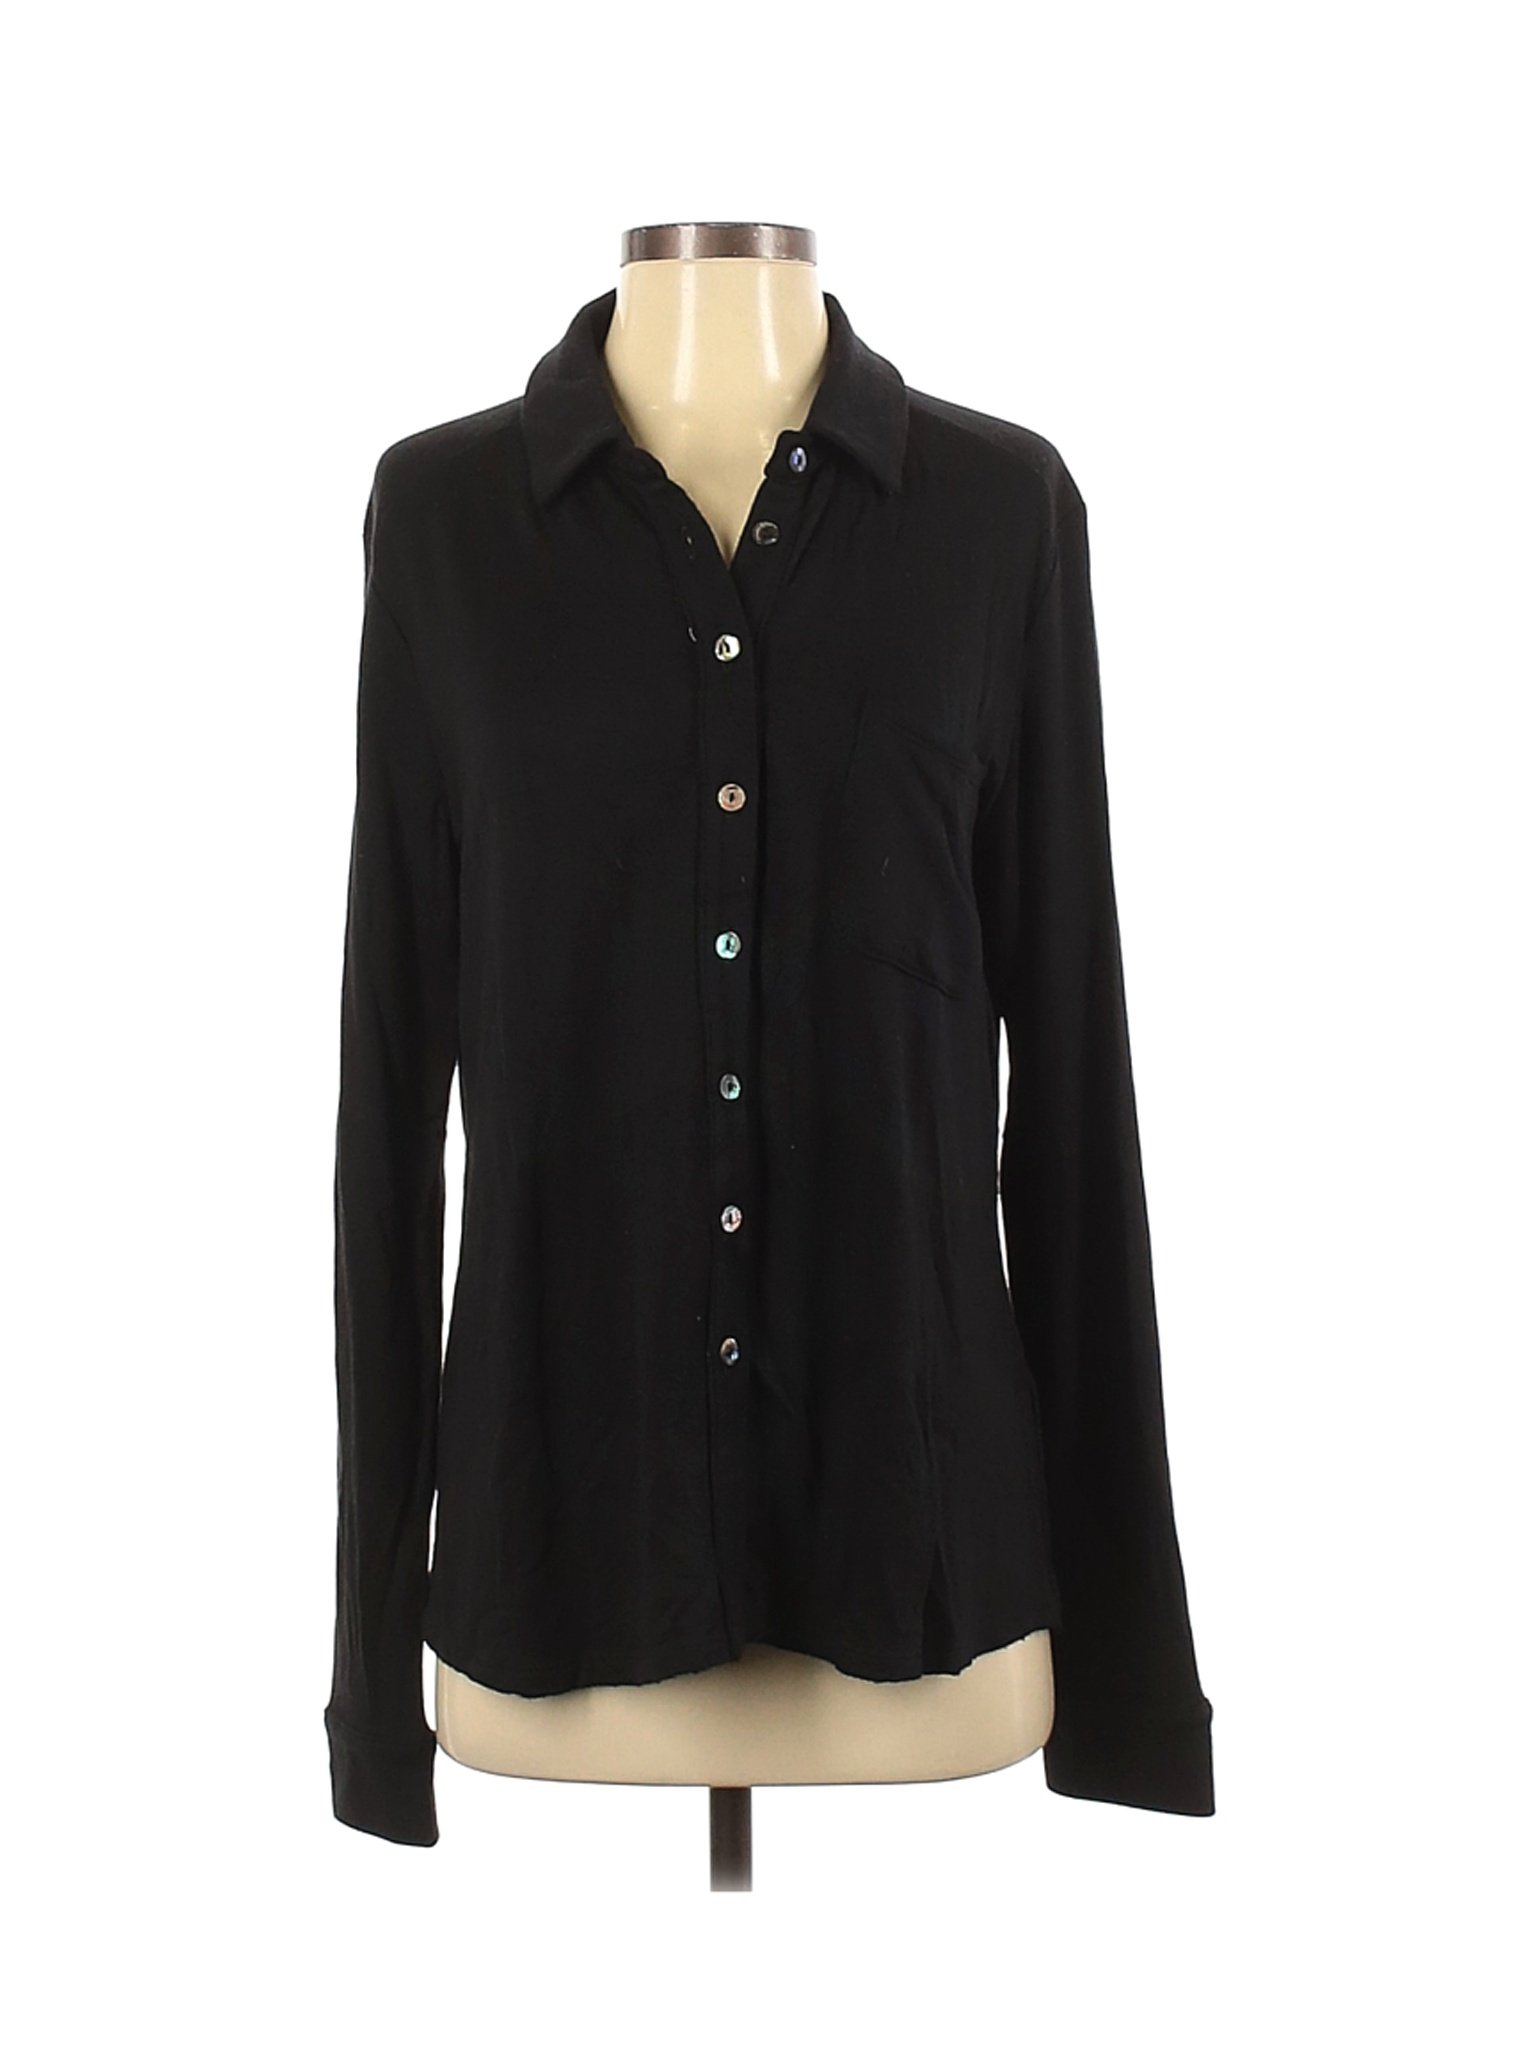 Bleusalt Women Black Long Sleeve Button-Down Shirt 3 | eBay